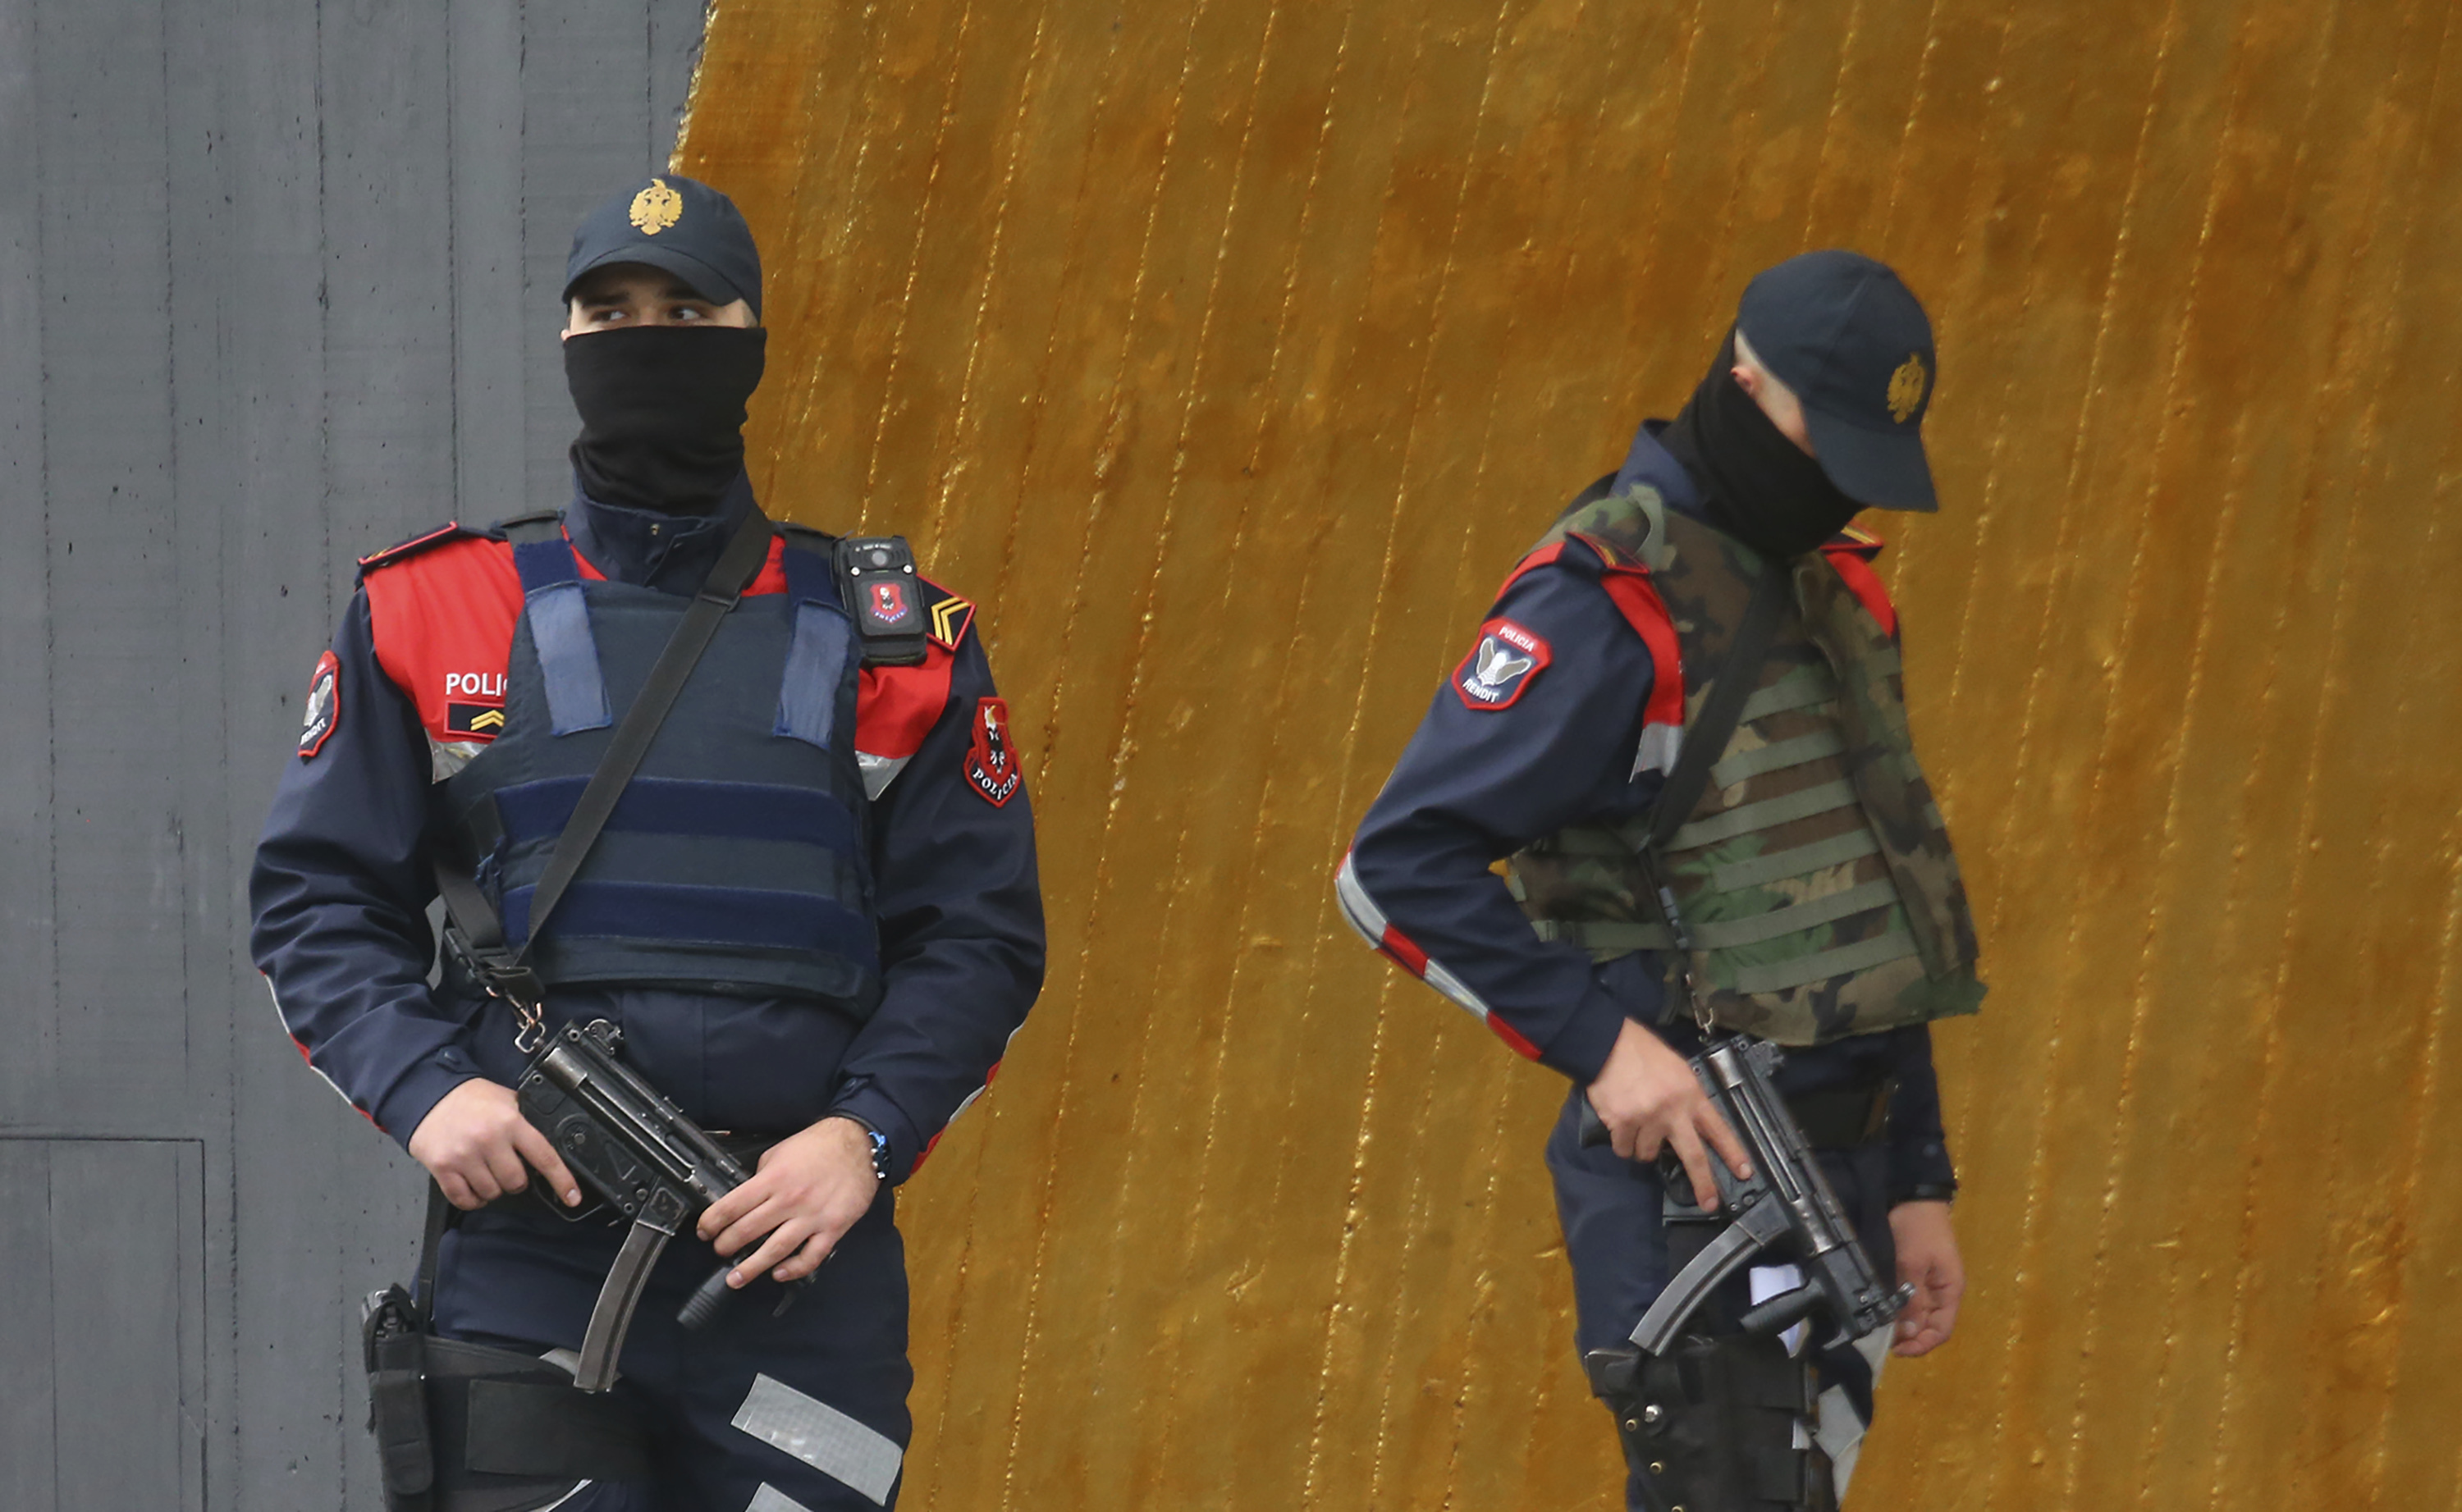 Албанската полиция издирва още двама души за обира